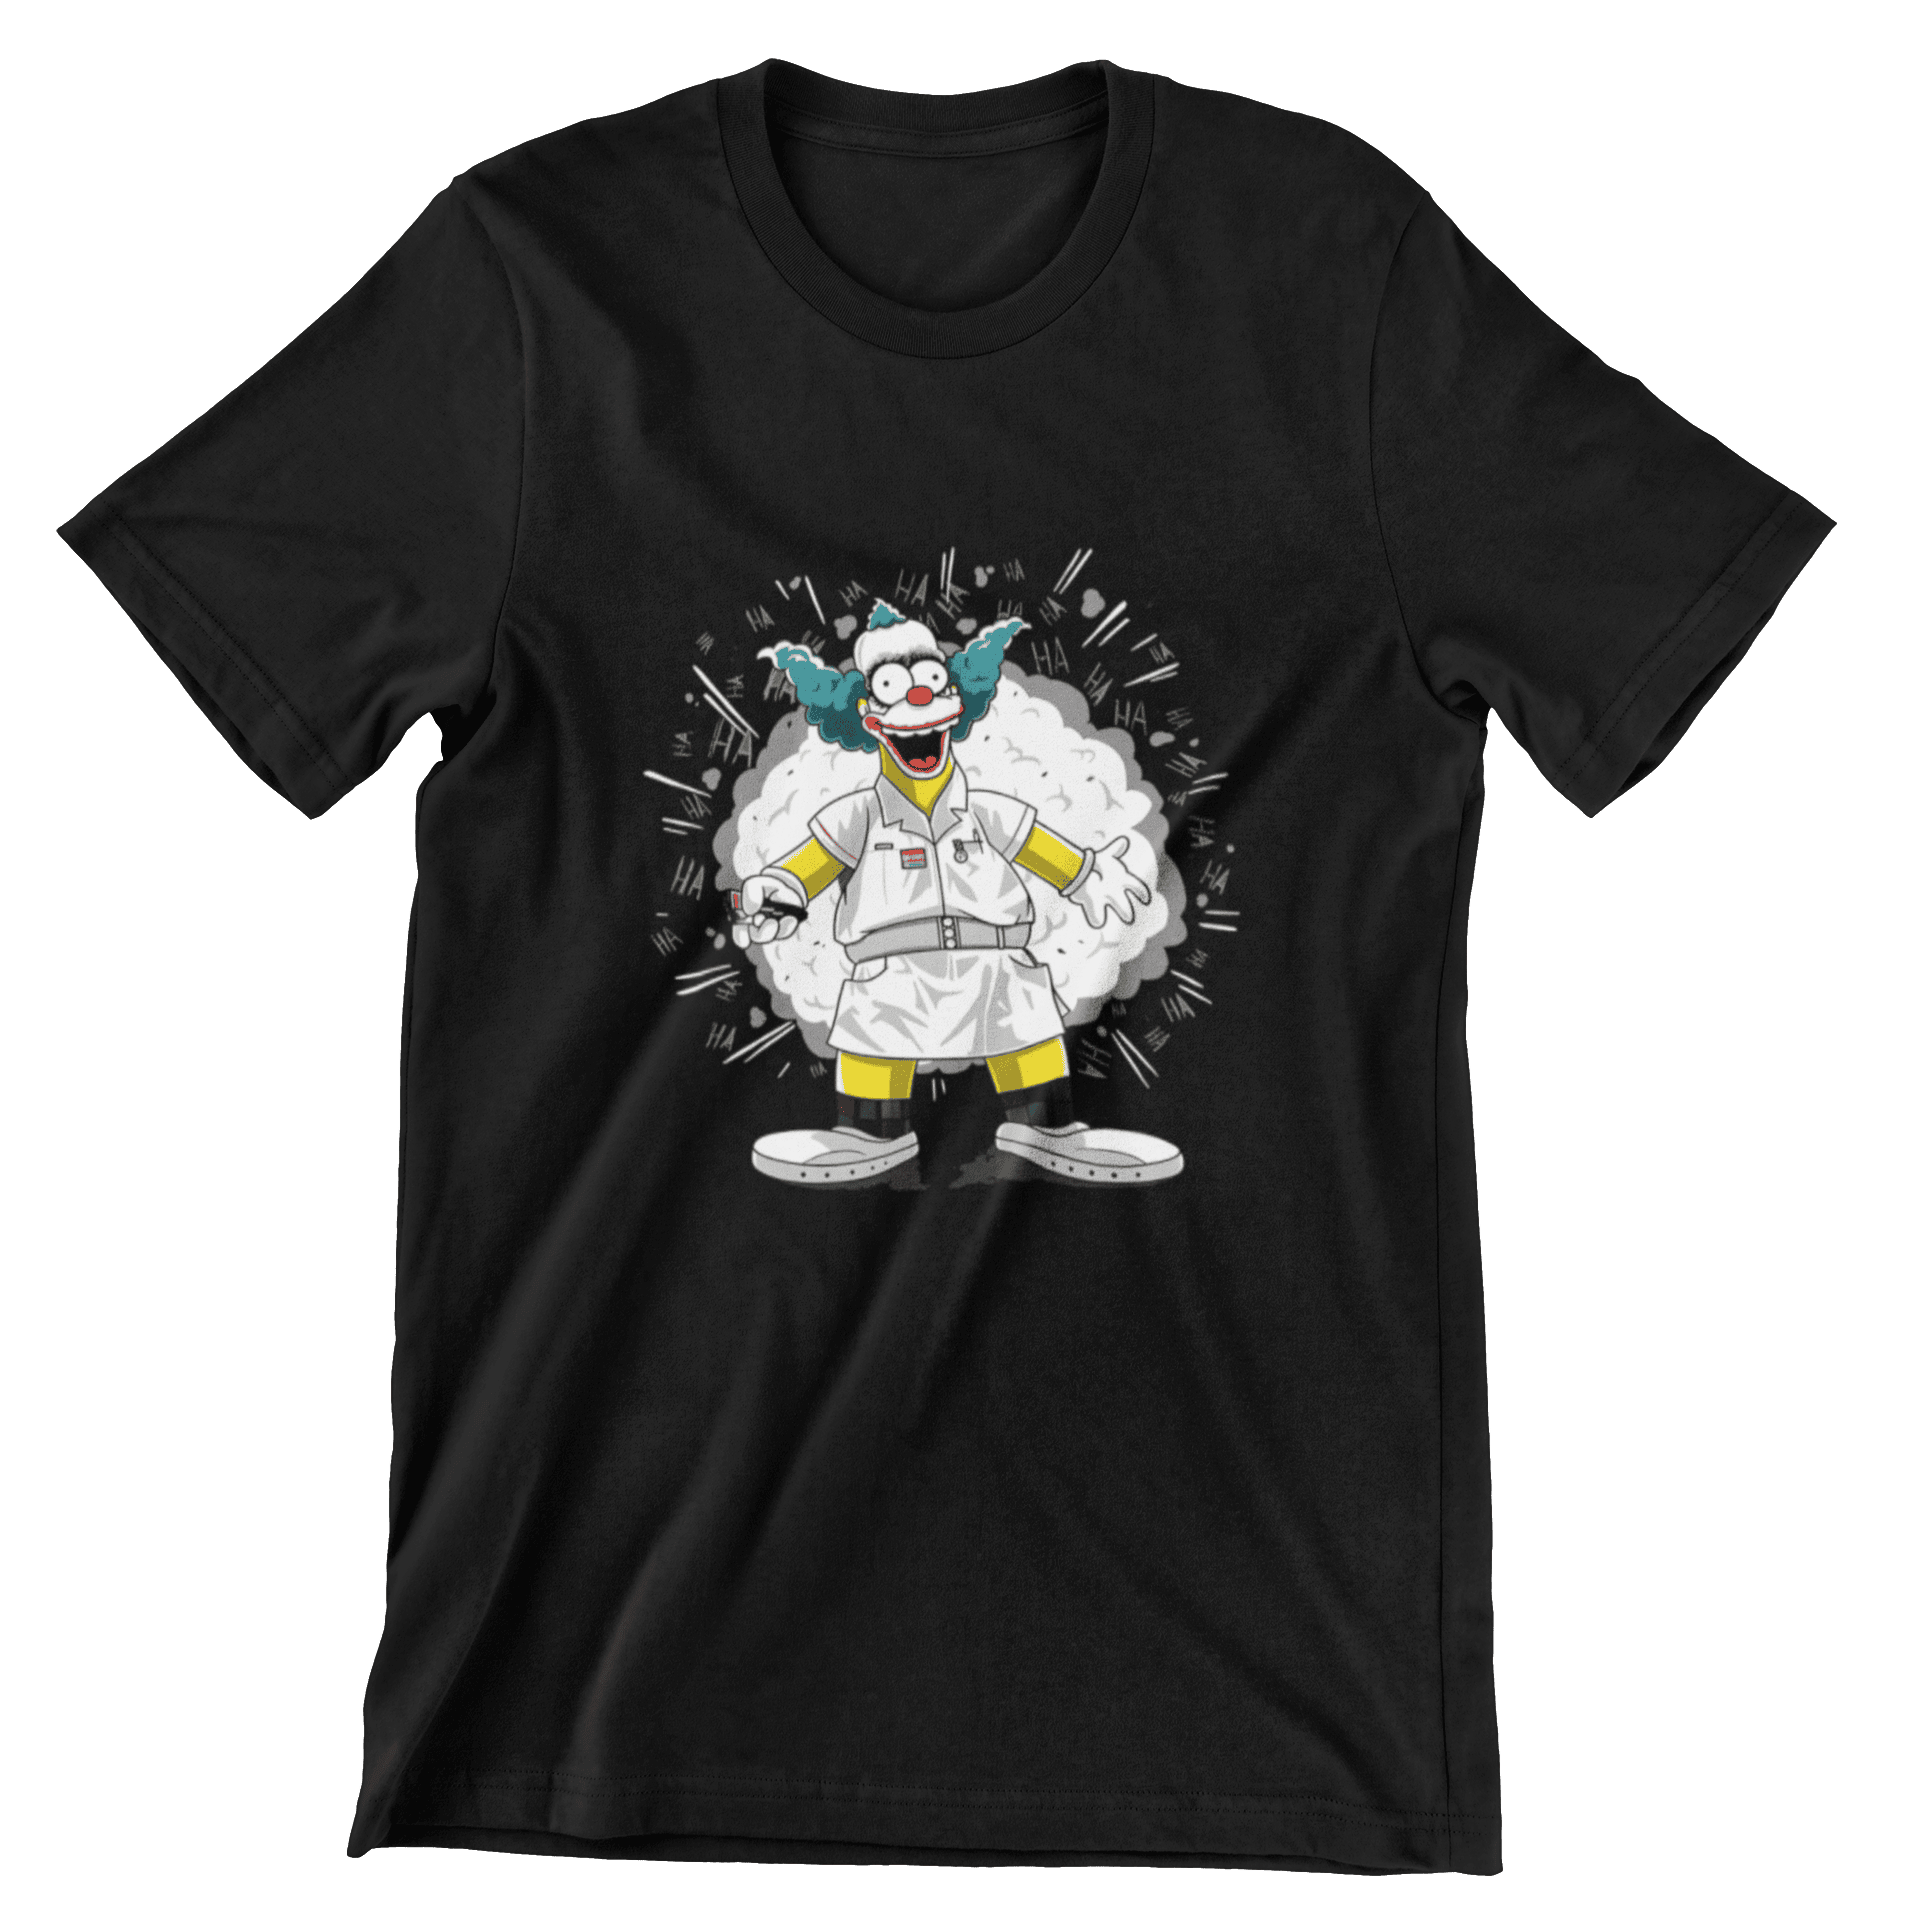 Krusty el Payaso Es un producto de ropa que es ideal para los fanáticos de los Simpsons y el Joker de Batman que deseen mostrar su amor de manera divertida y original.